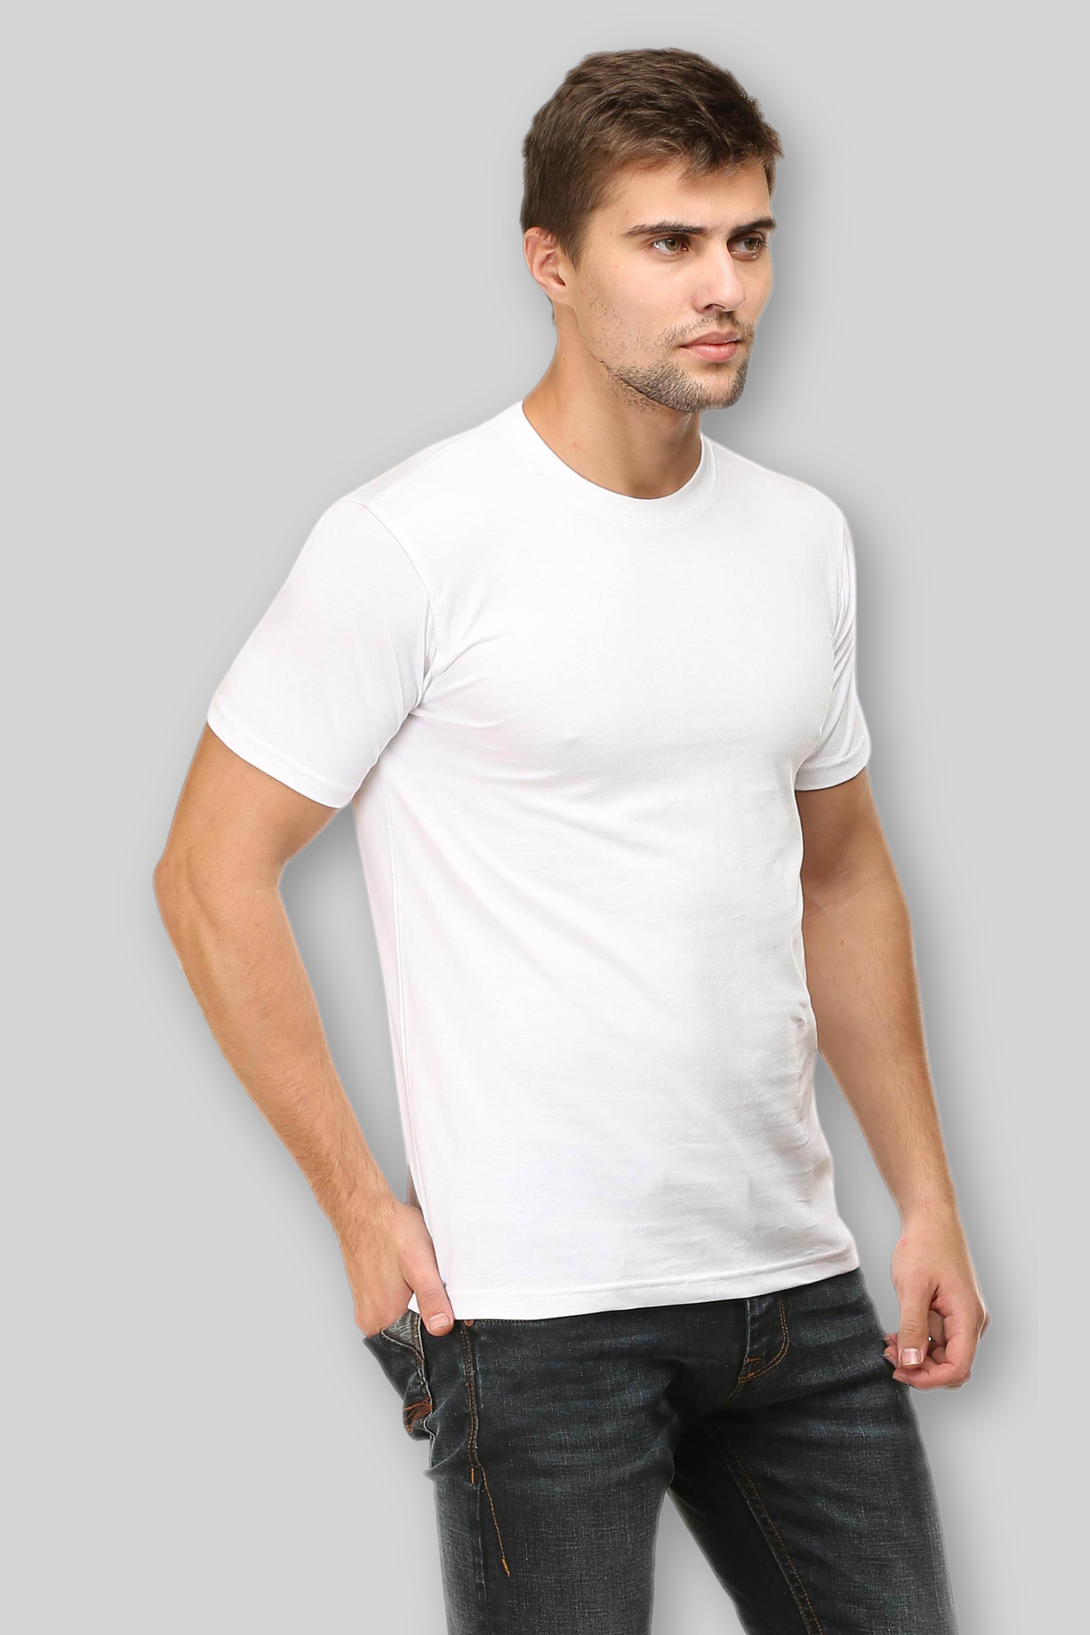 White T-Shirt For Men - WowWaves - 3